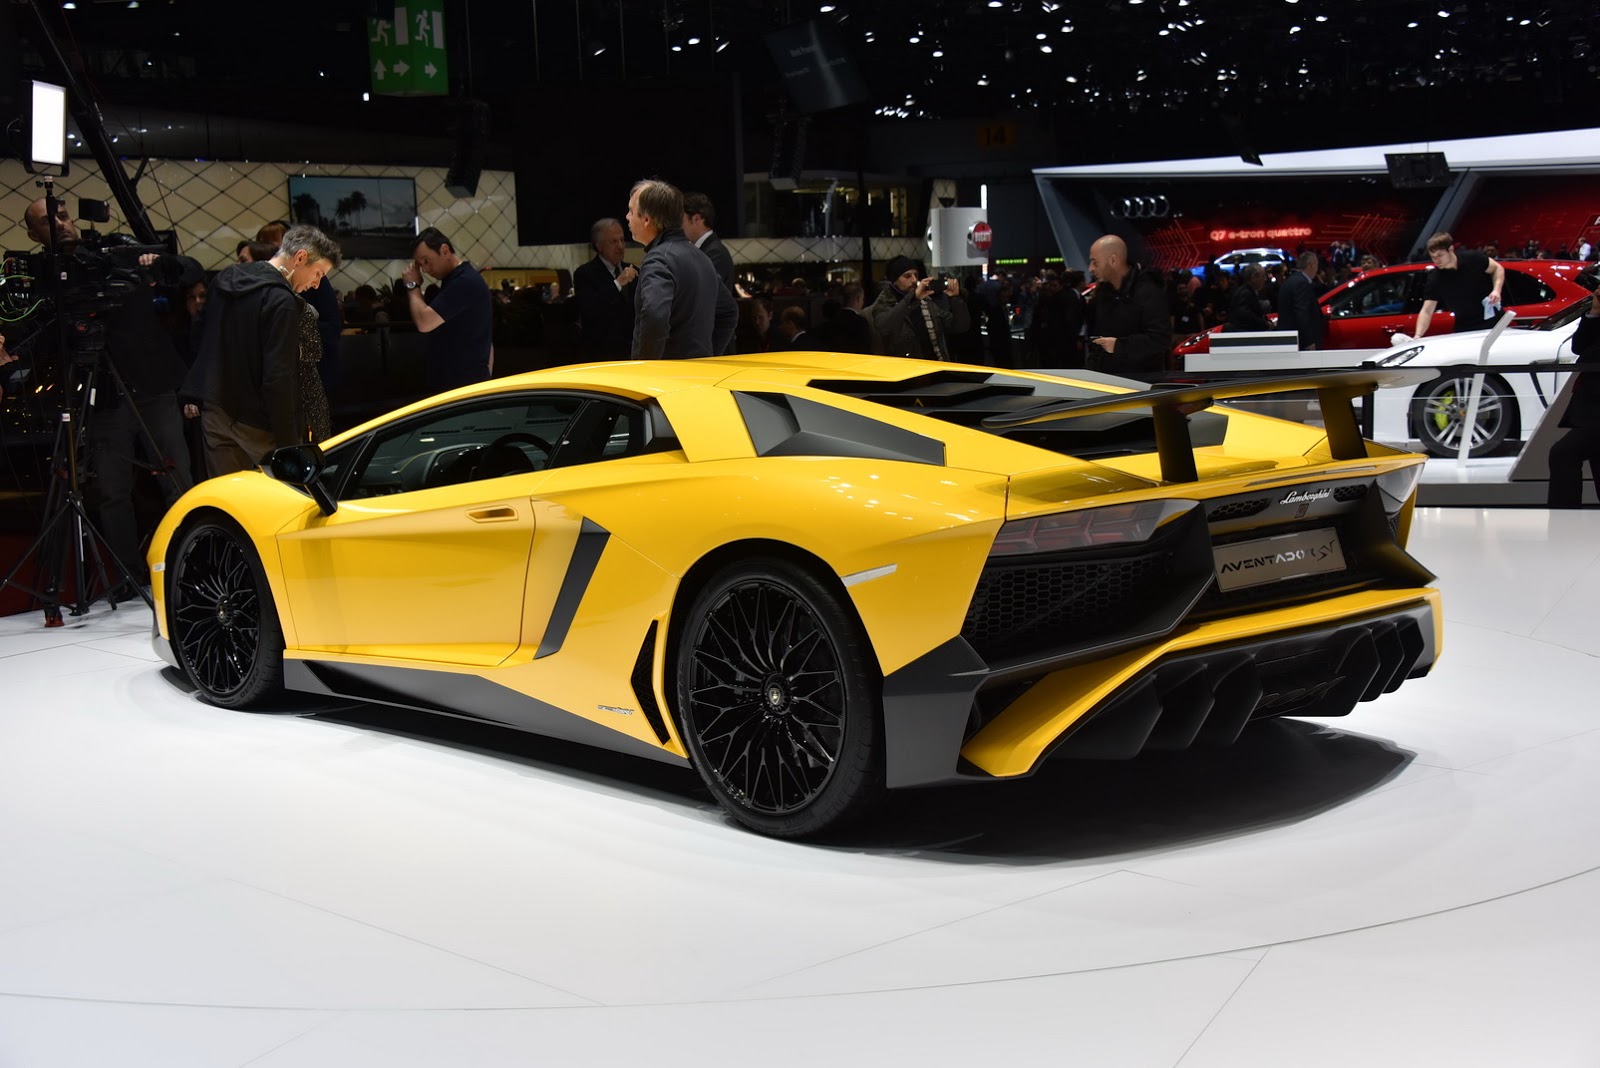 Lamborghini-Aventador-LP-750-4-Superveloce-conversion (4)